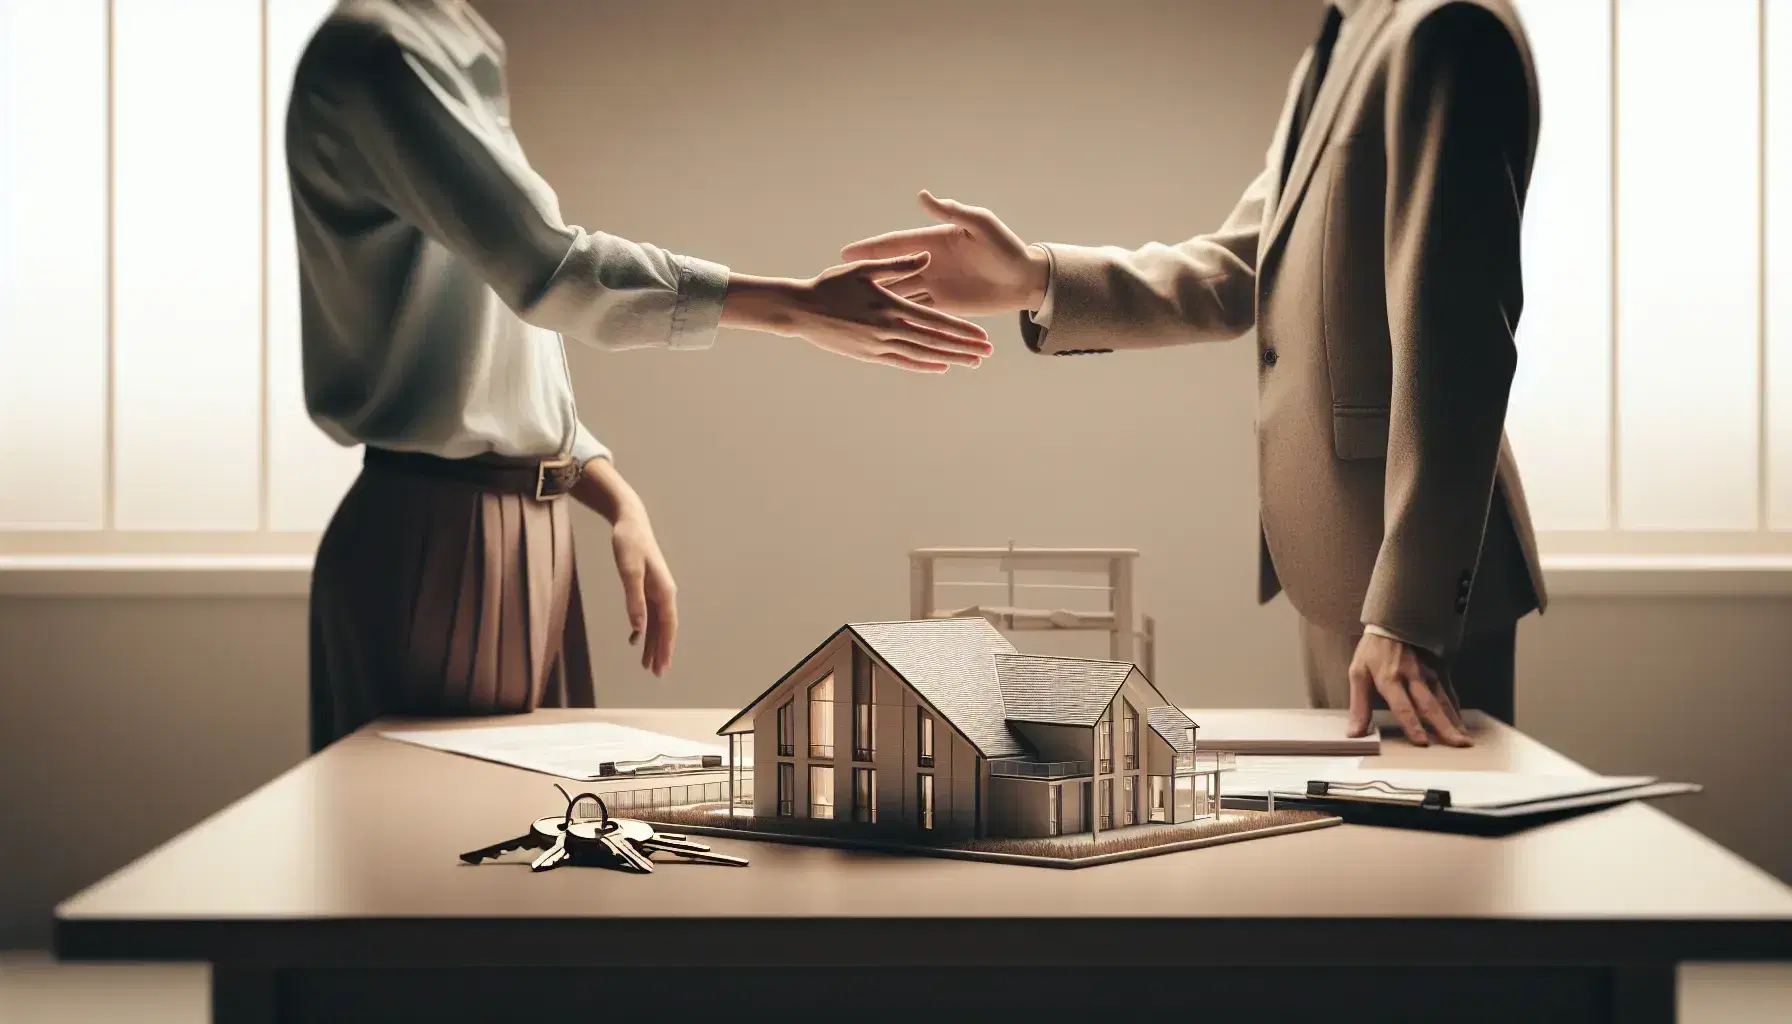 Dos profesionales realizando un apretón de manos frente a una maqueta de edificio con llaves al lado, simbolizando un acuerdo inmobiliario.